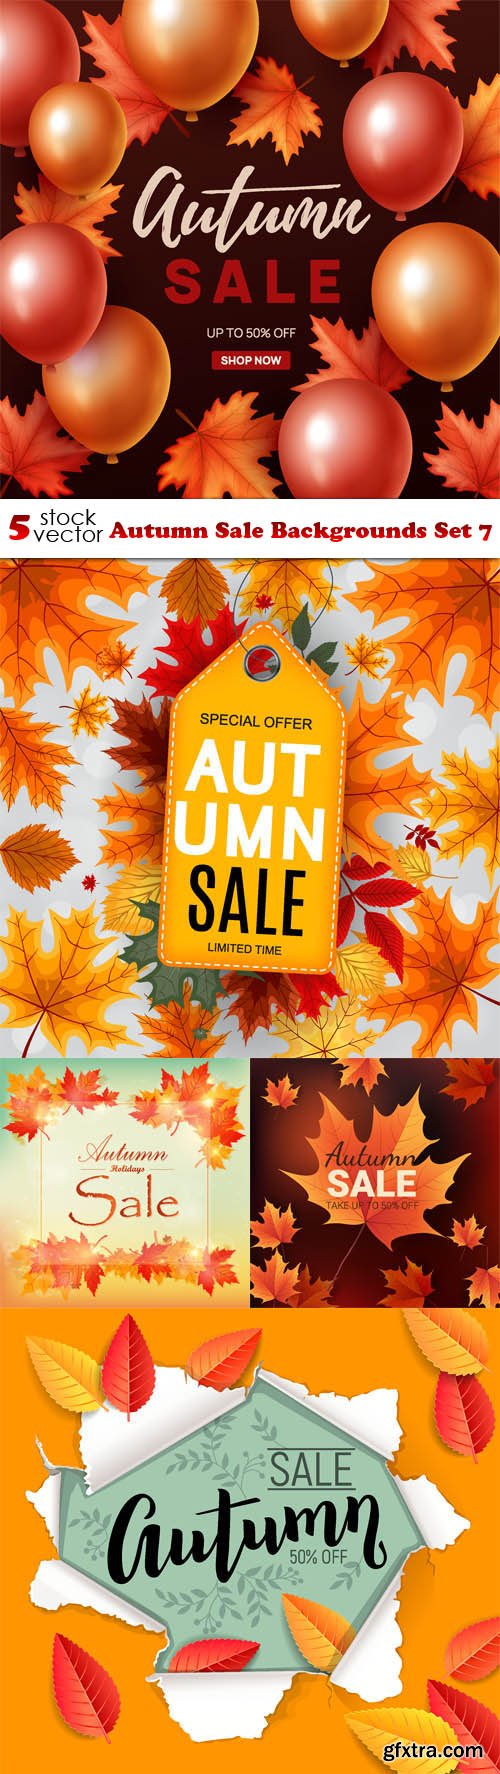 Vectors - Autumn Sale Backgrounds Set 7